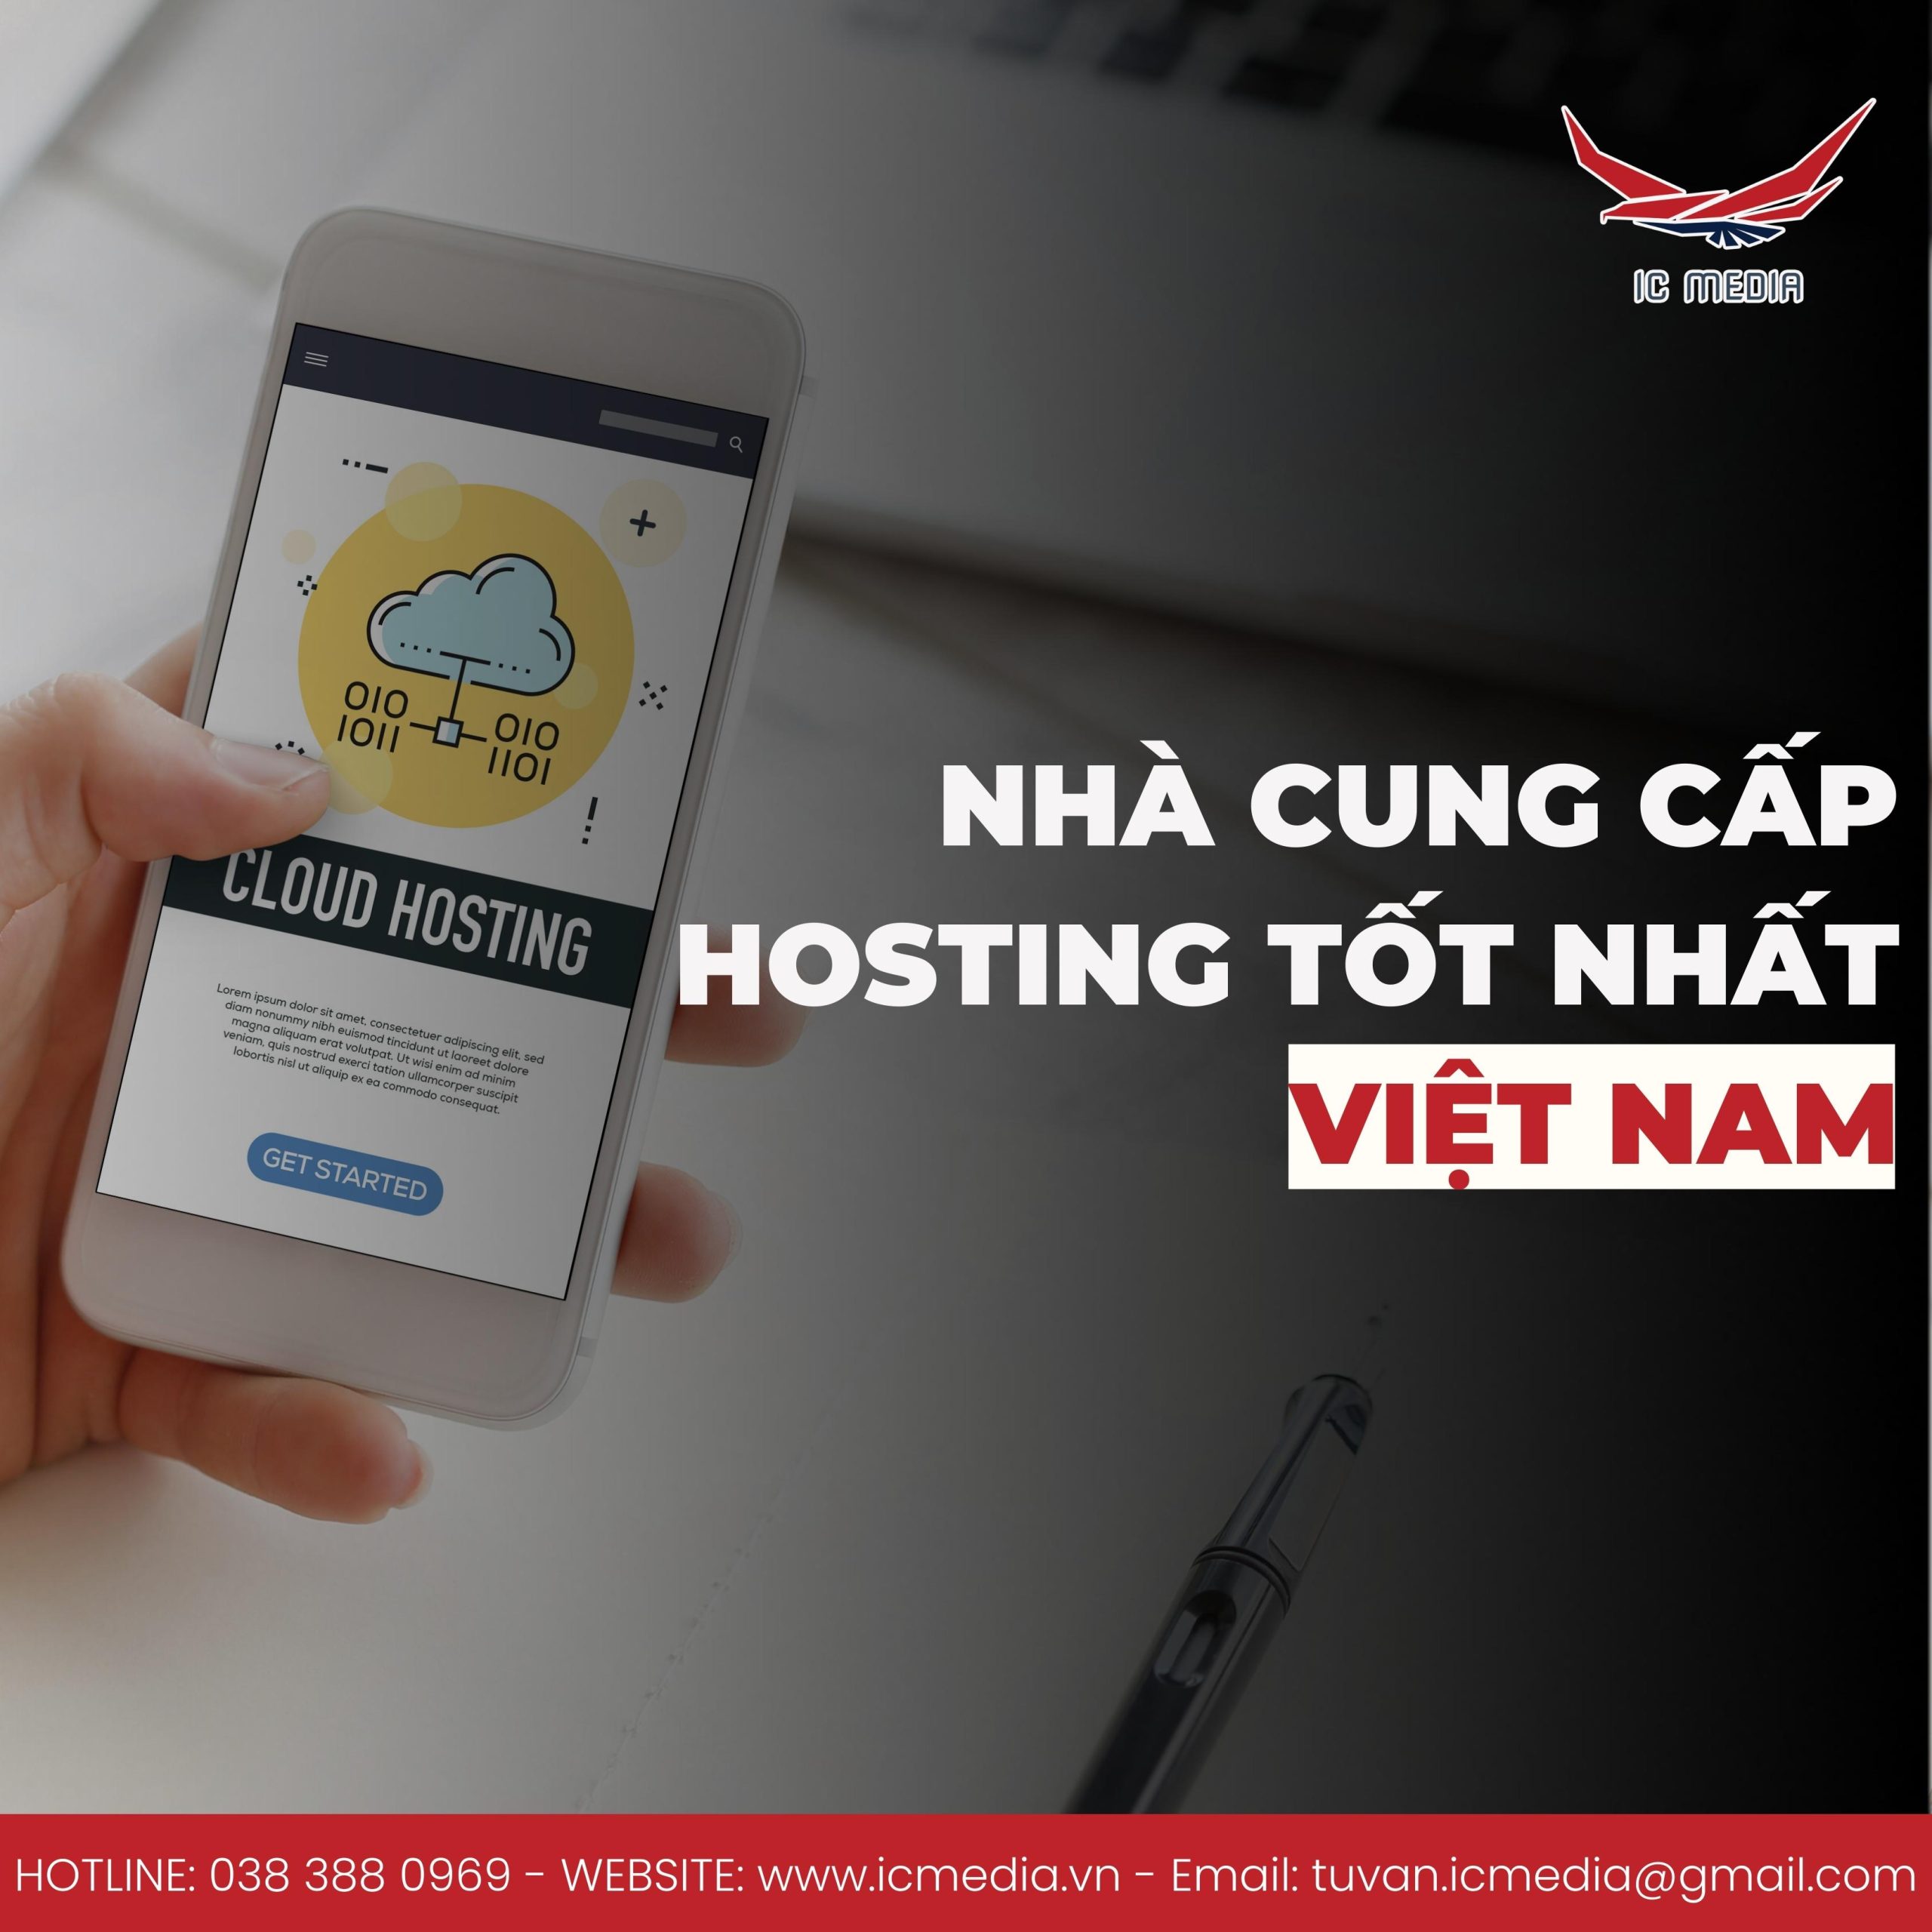 Nhà cung cấp hosting tốt nhất Việt Nam: IC Media – bạn đã biết chưa?